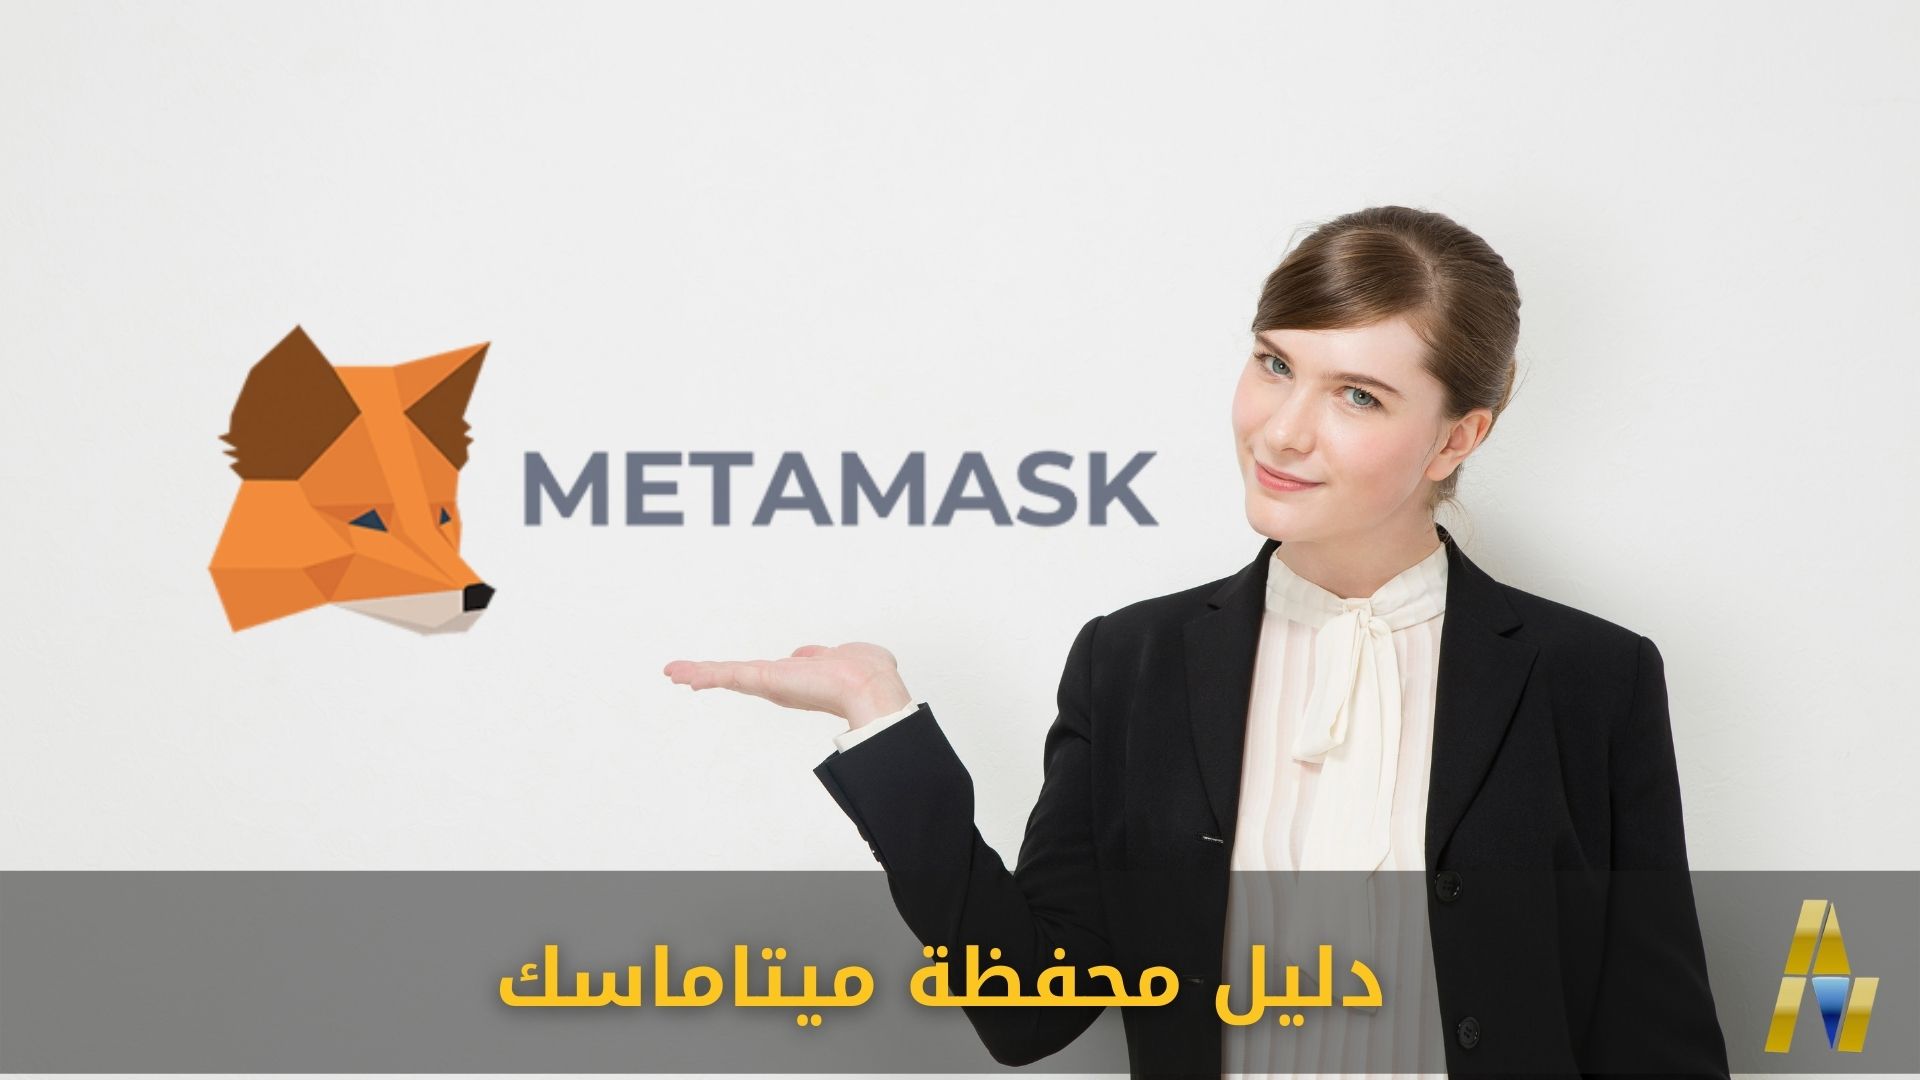 دليل ربط حساب ميتاماسك MetaMask بشبكات البلوكتشين